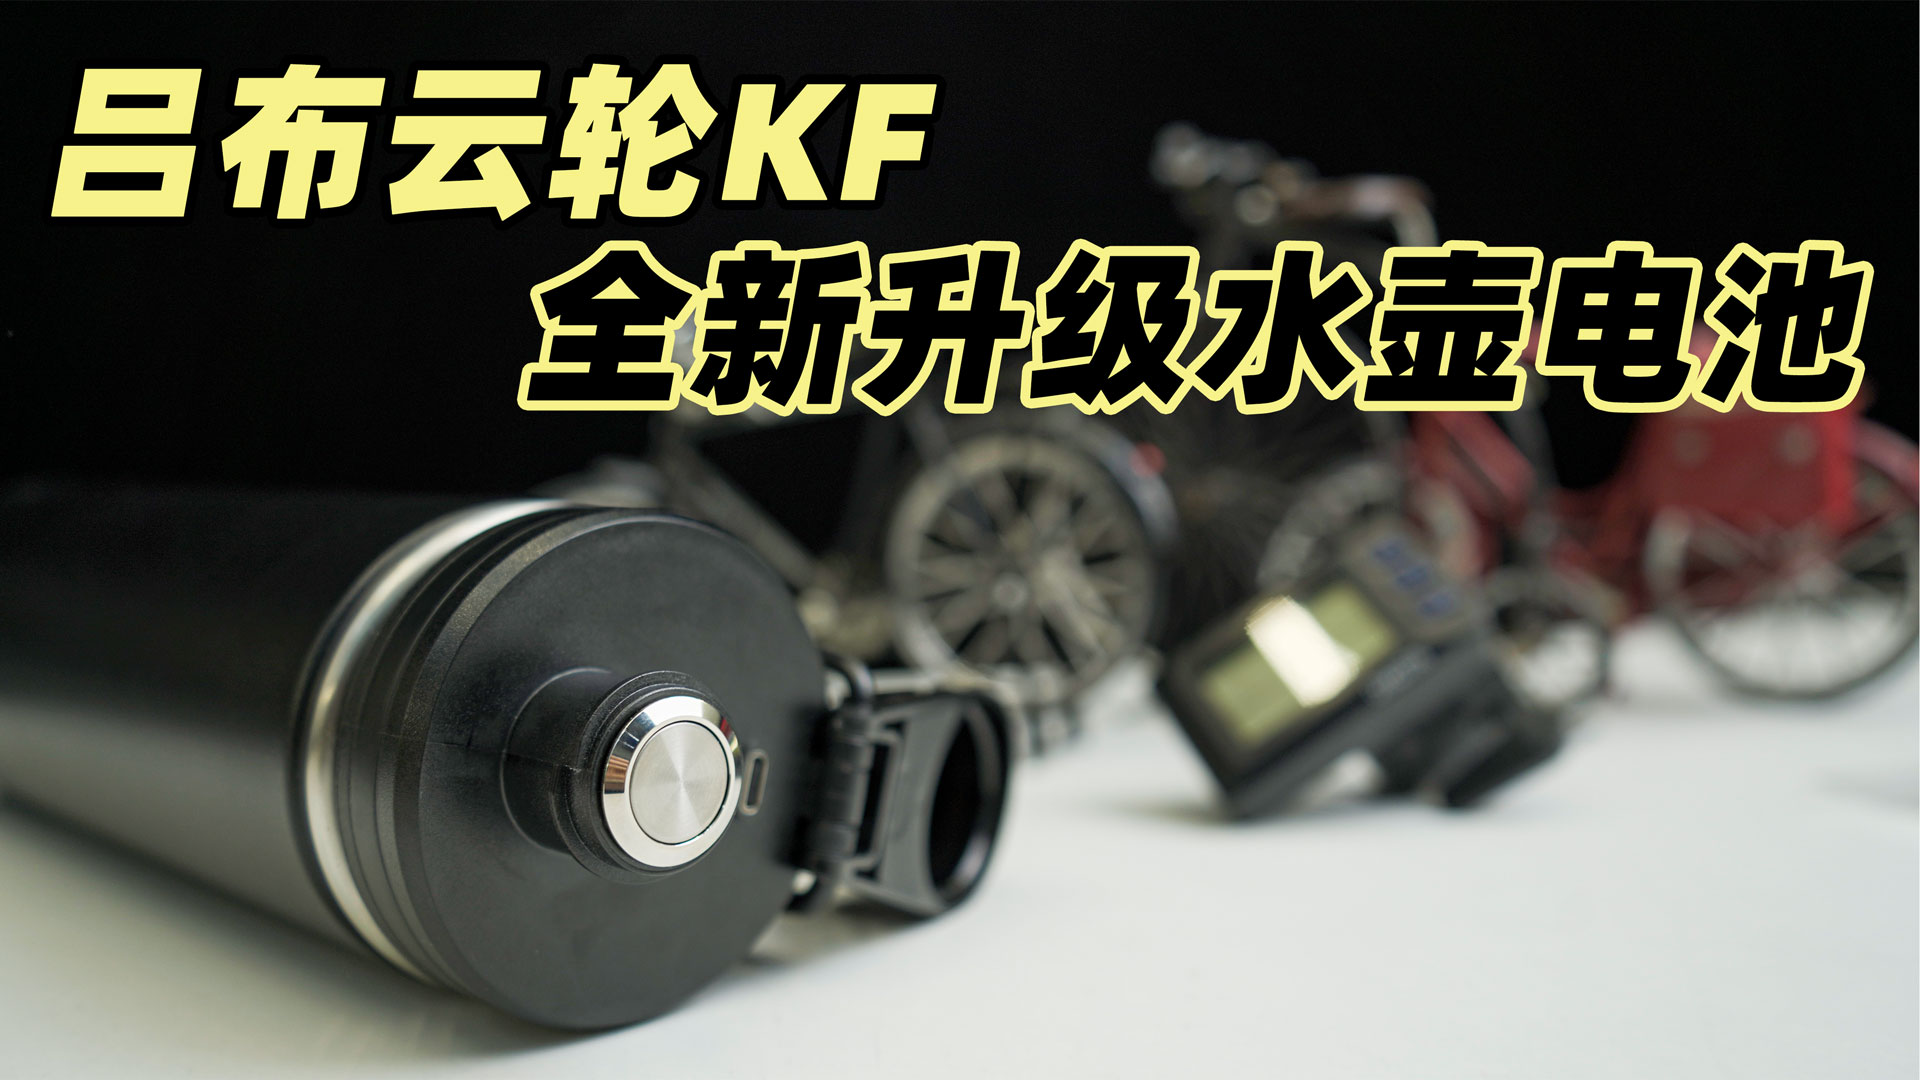 吕布云轮KF系列，全新升级水壶电池设计